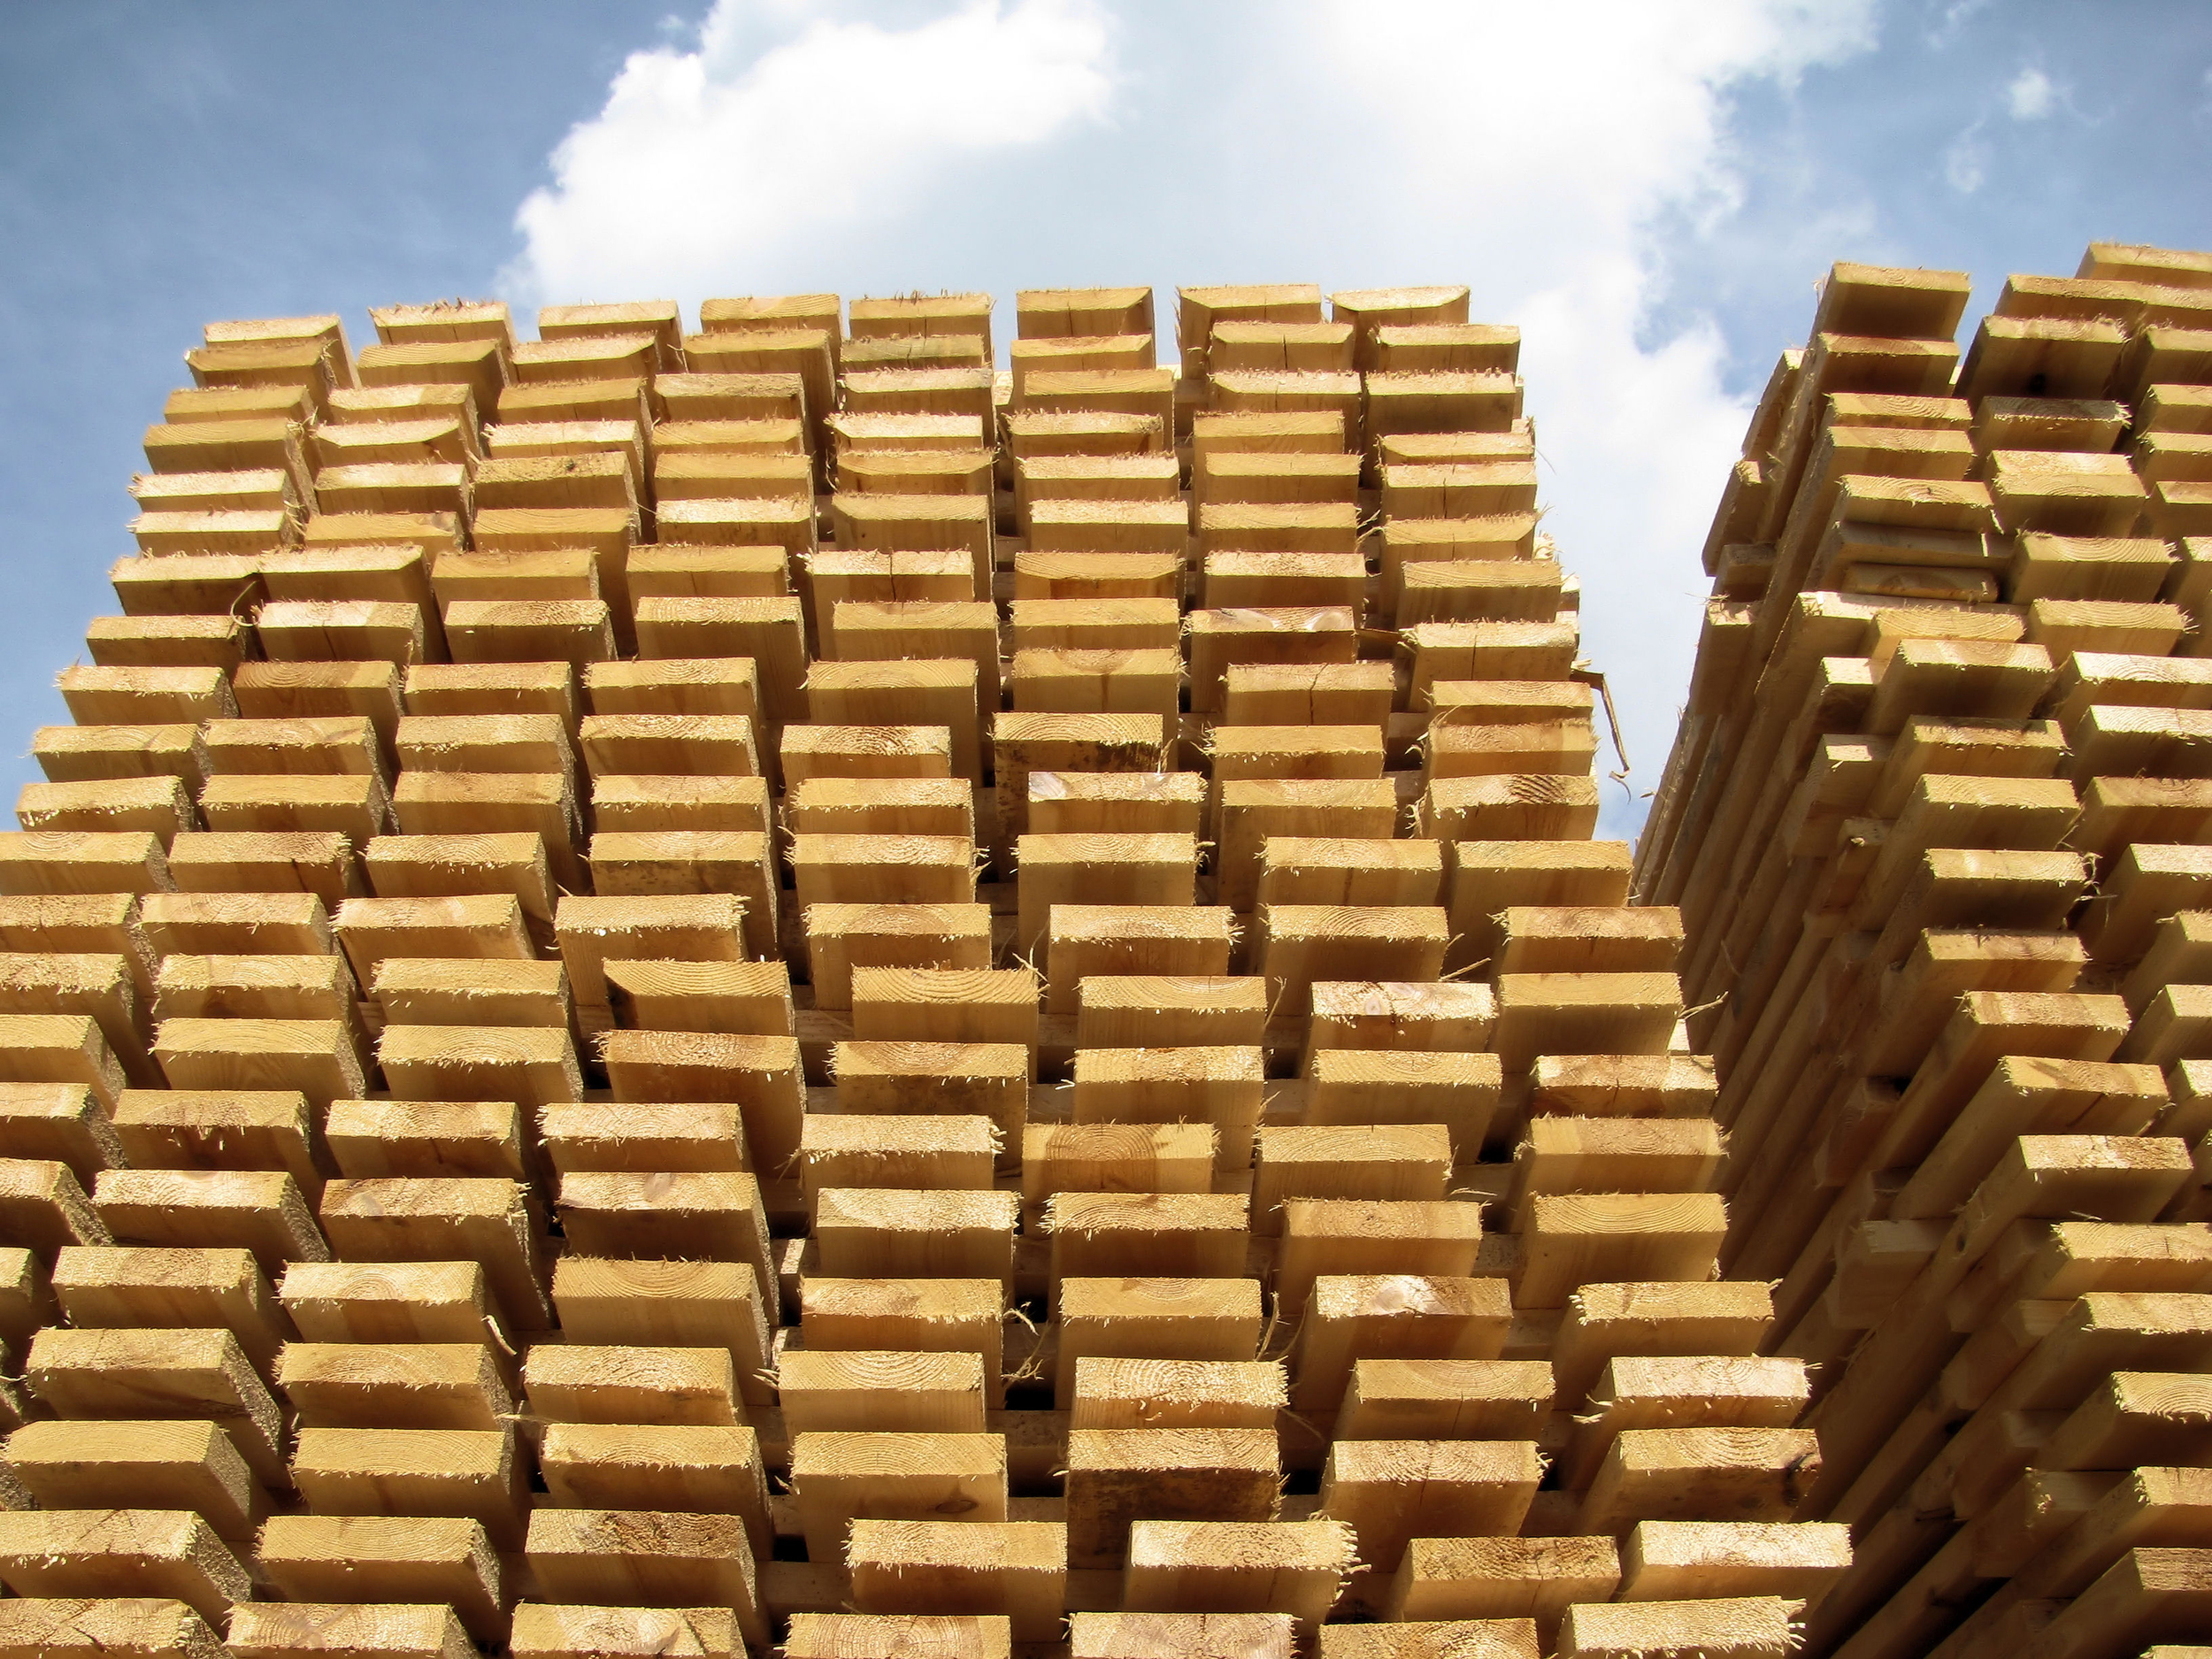   Augmentation de la productivité sur des systèmes d'empilement et classement de bois   